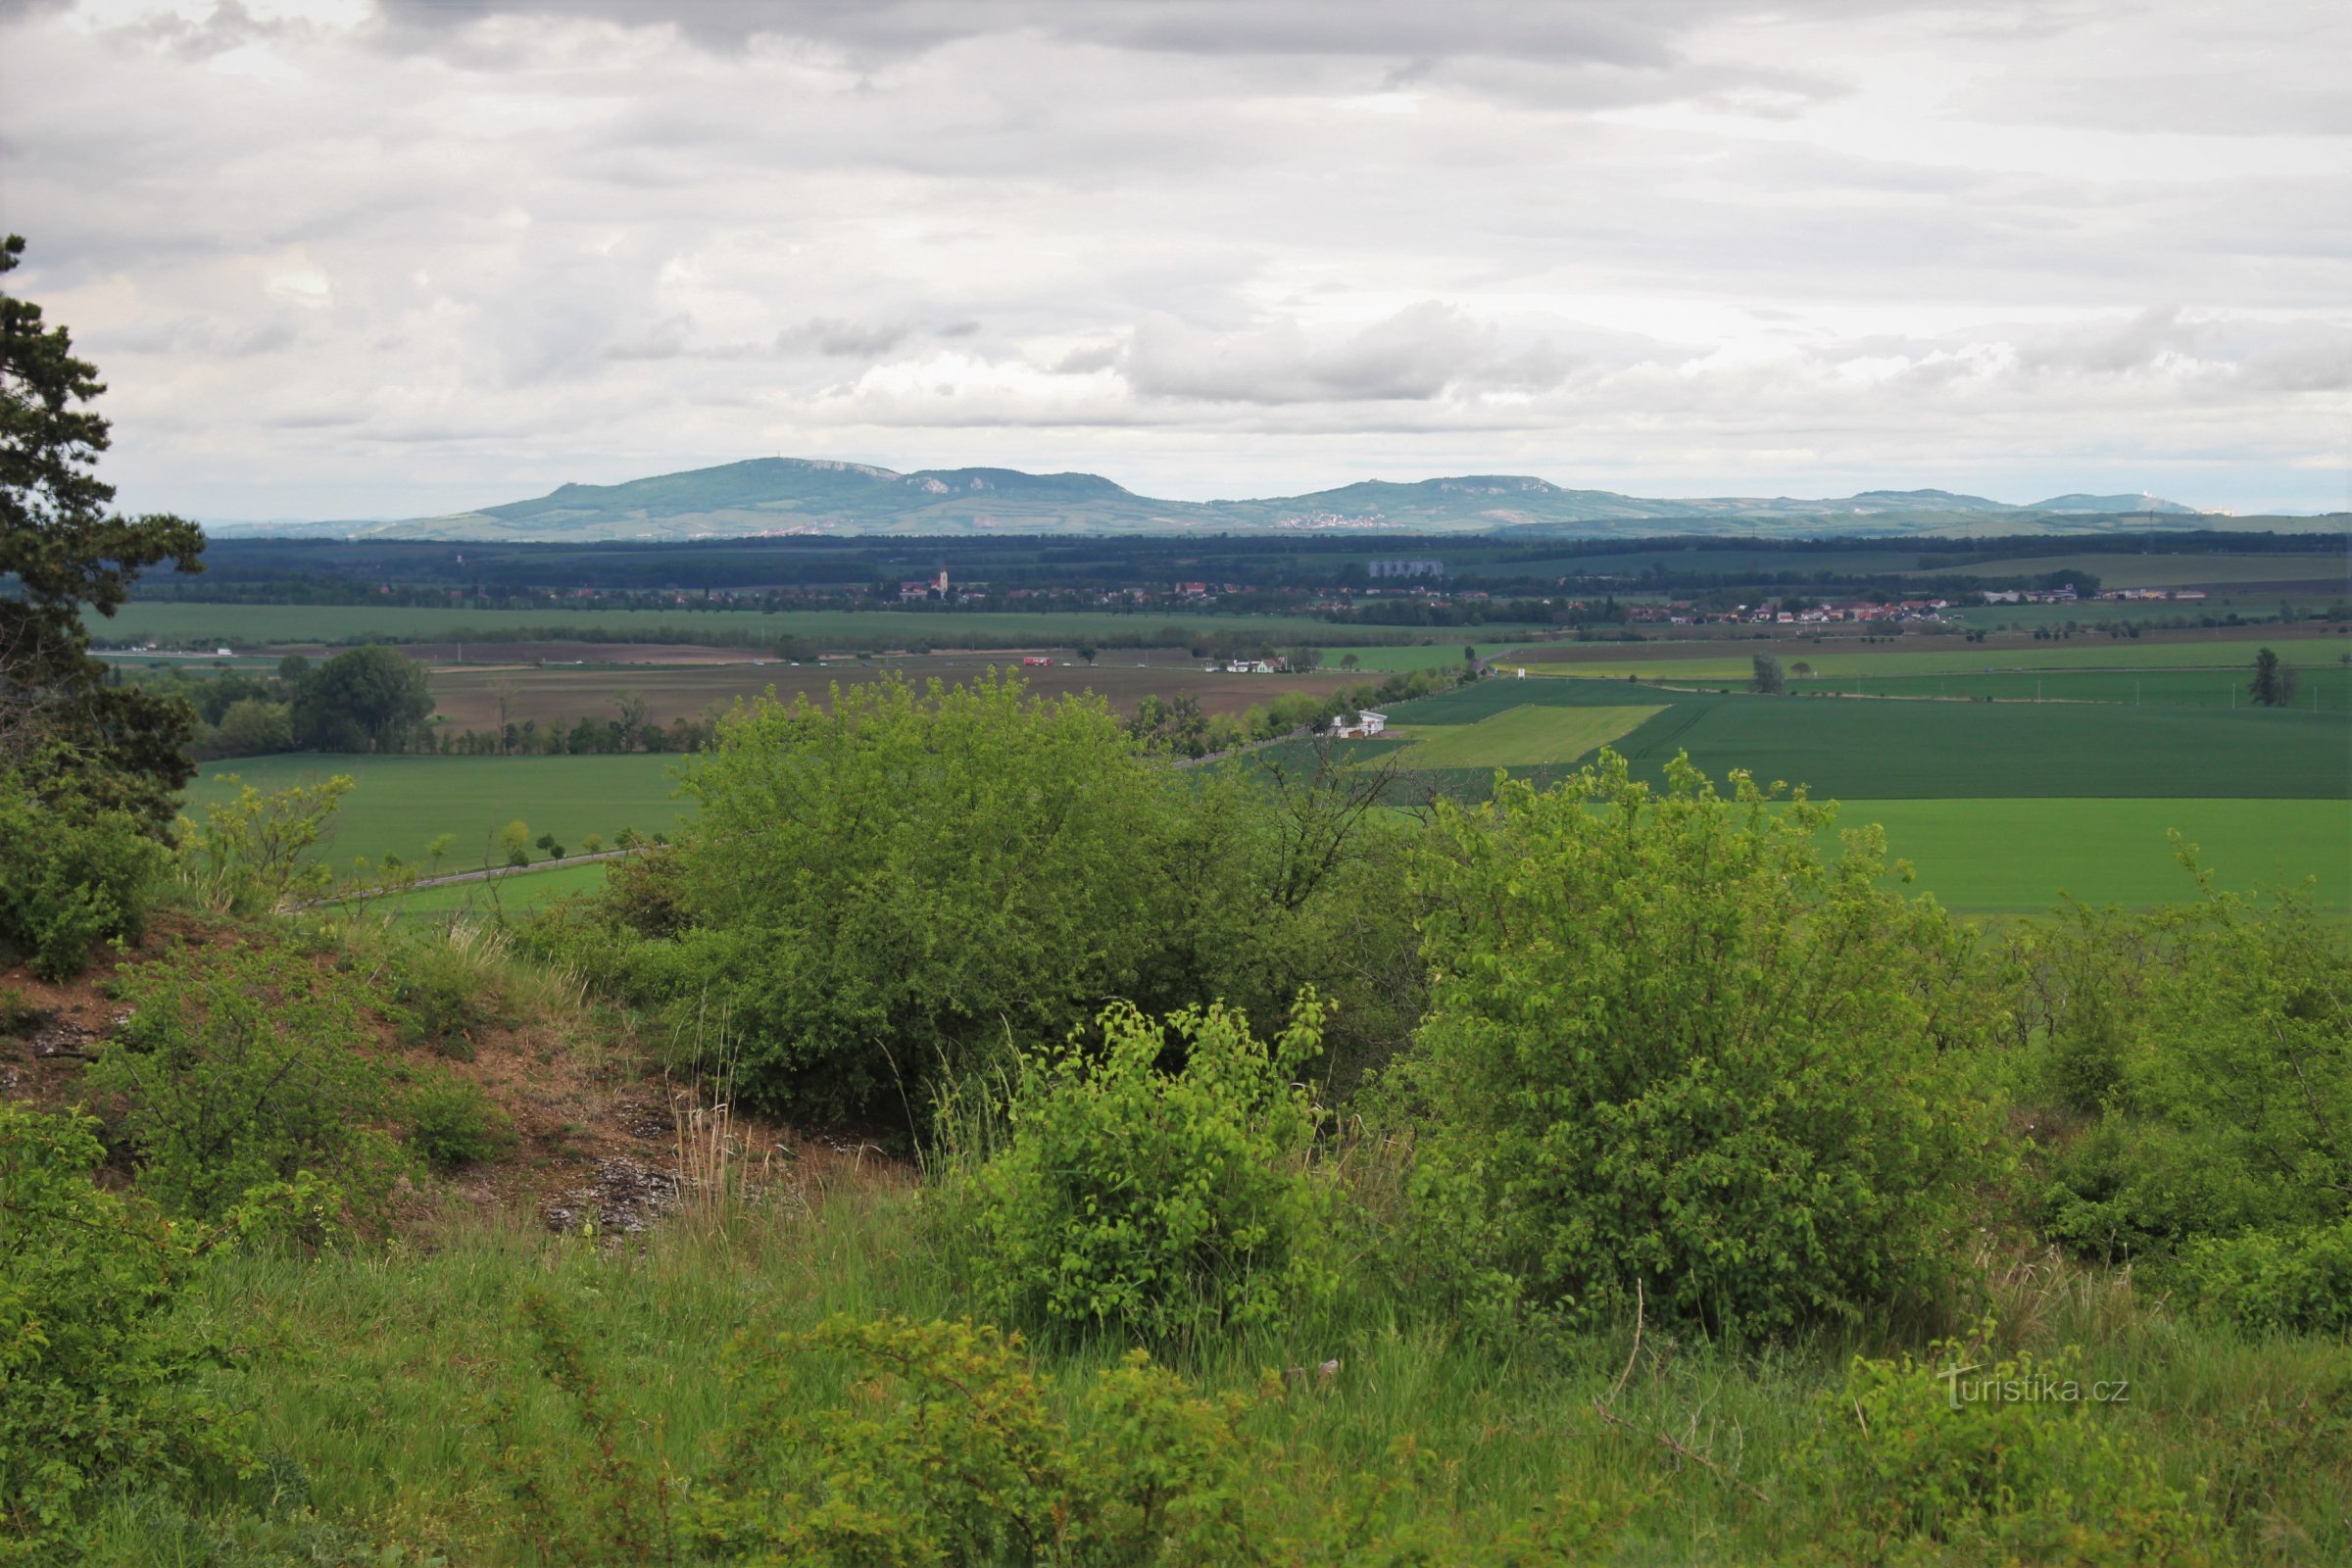 也许最有趣的观点是朝向 Pavlovské vrchy 山脊的全景